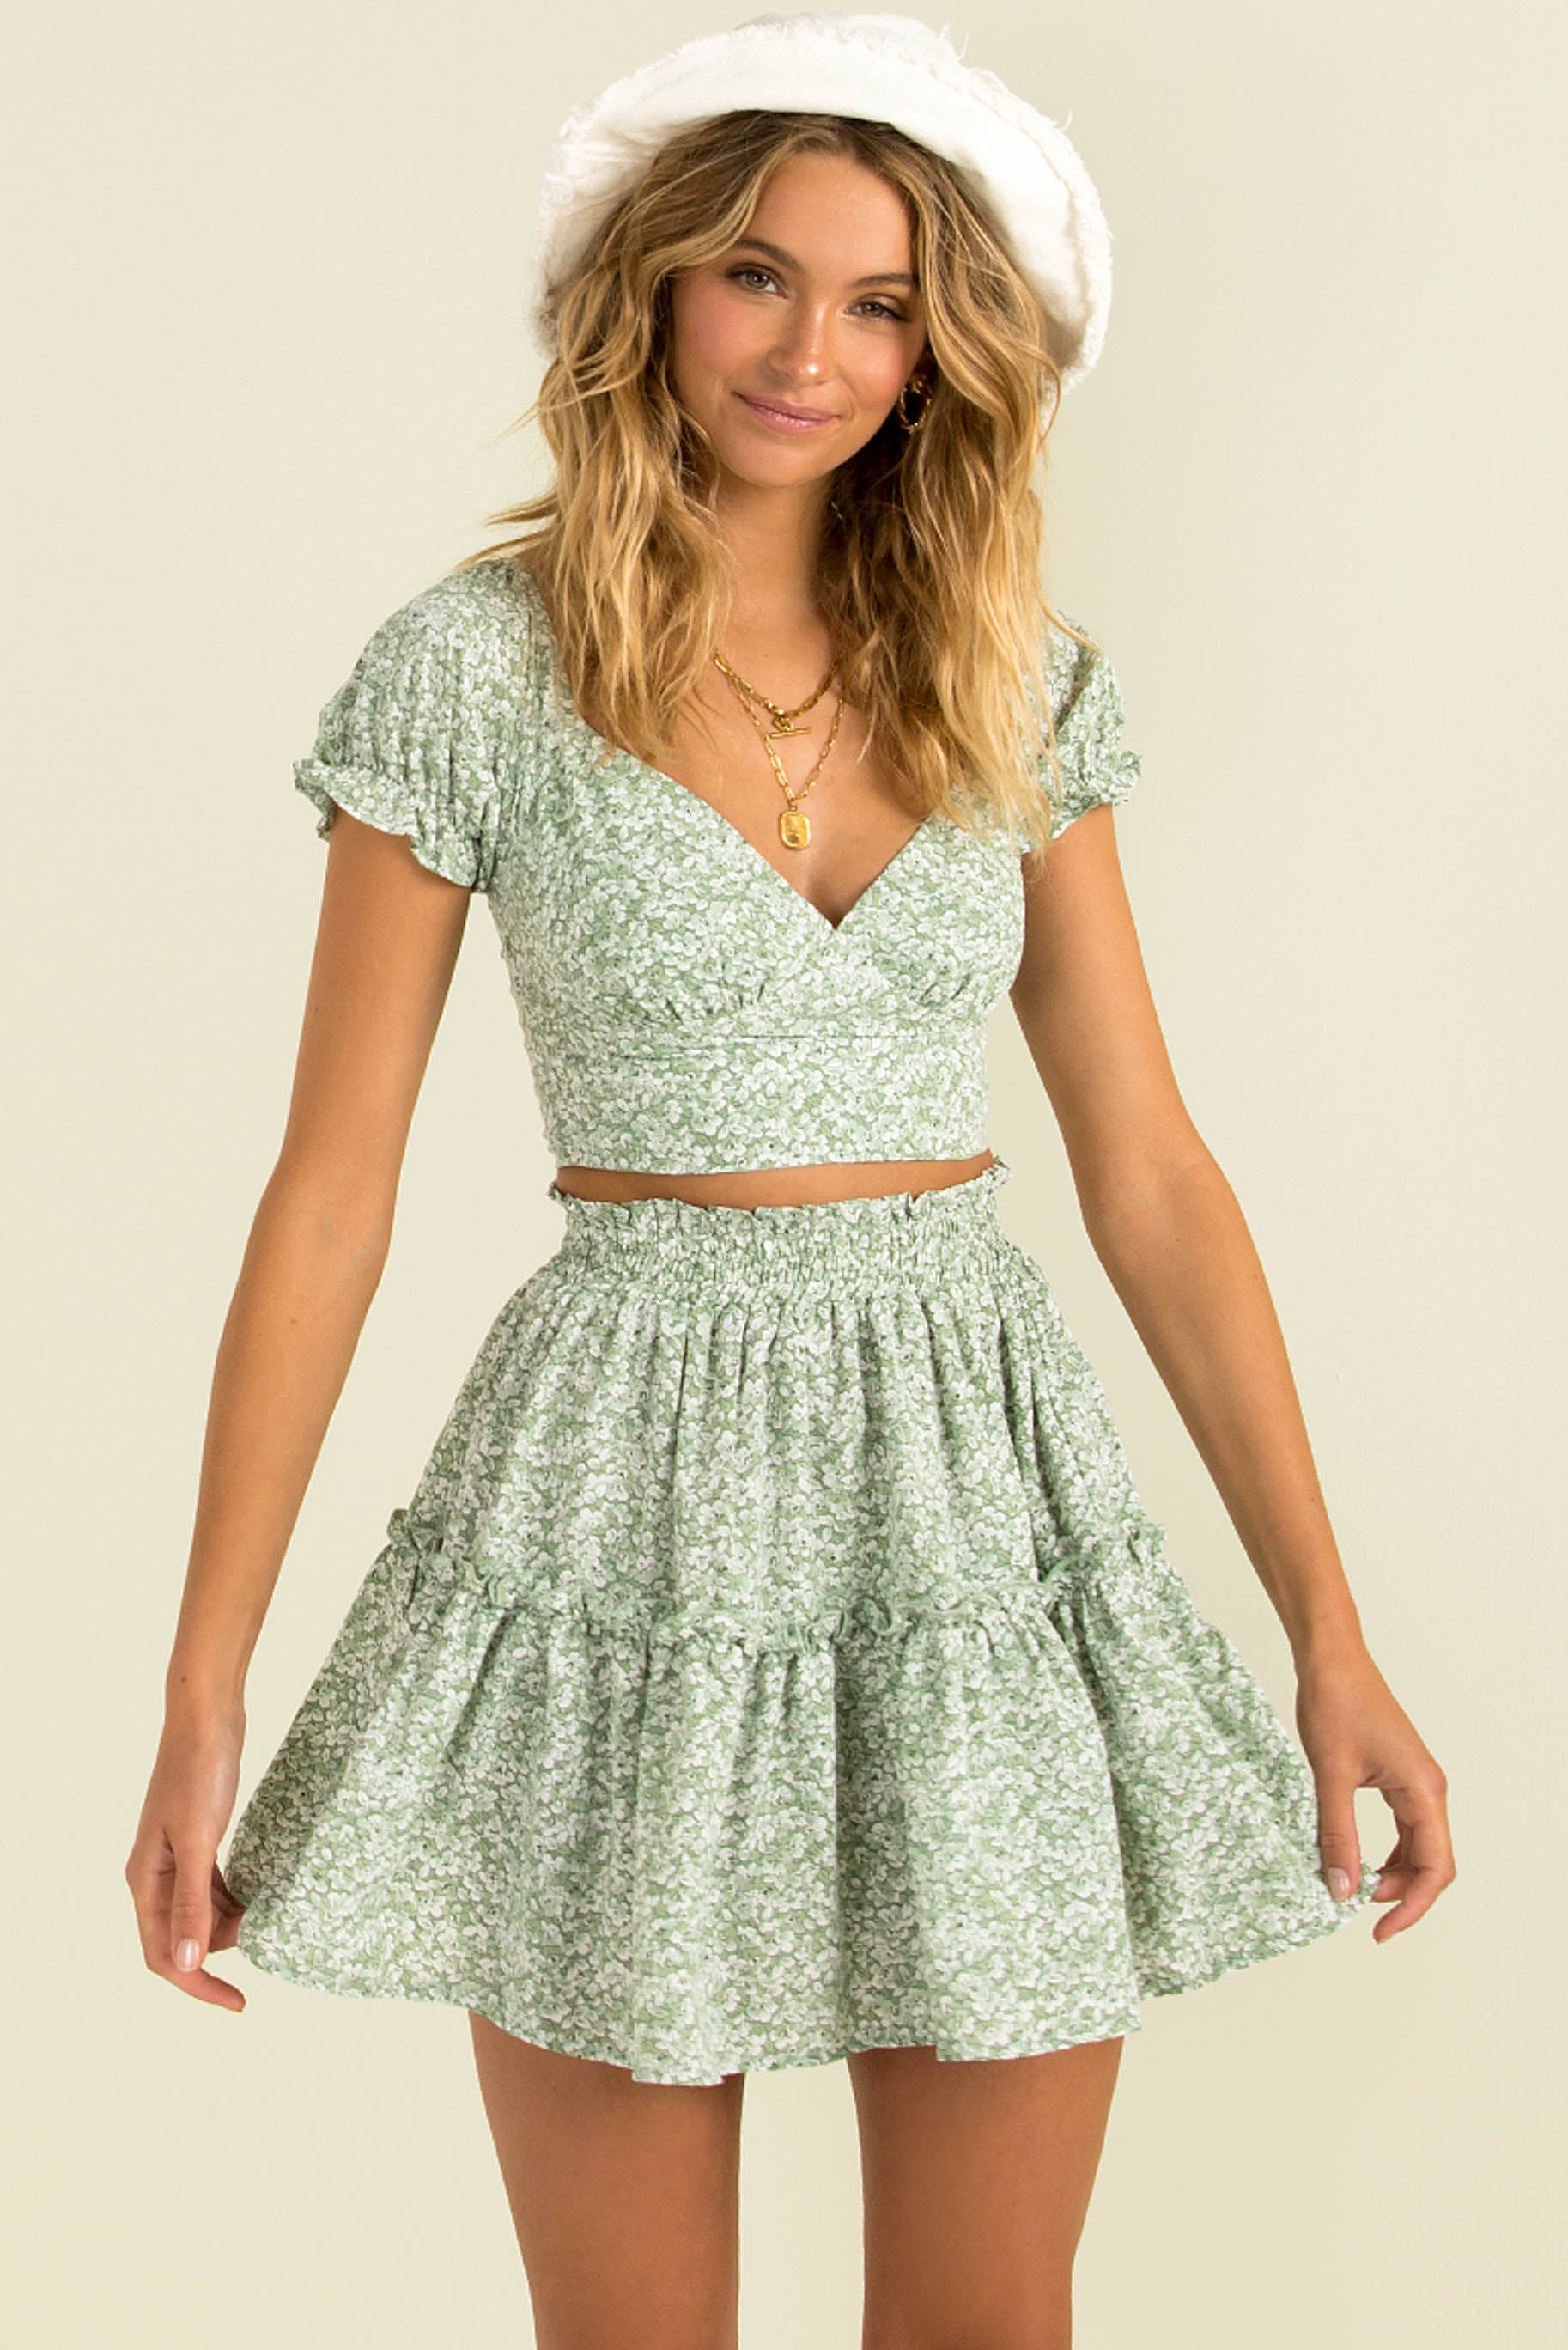 Evalee Skirt / Green Floral